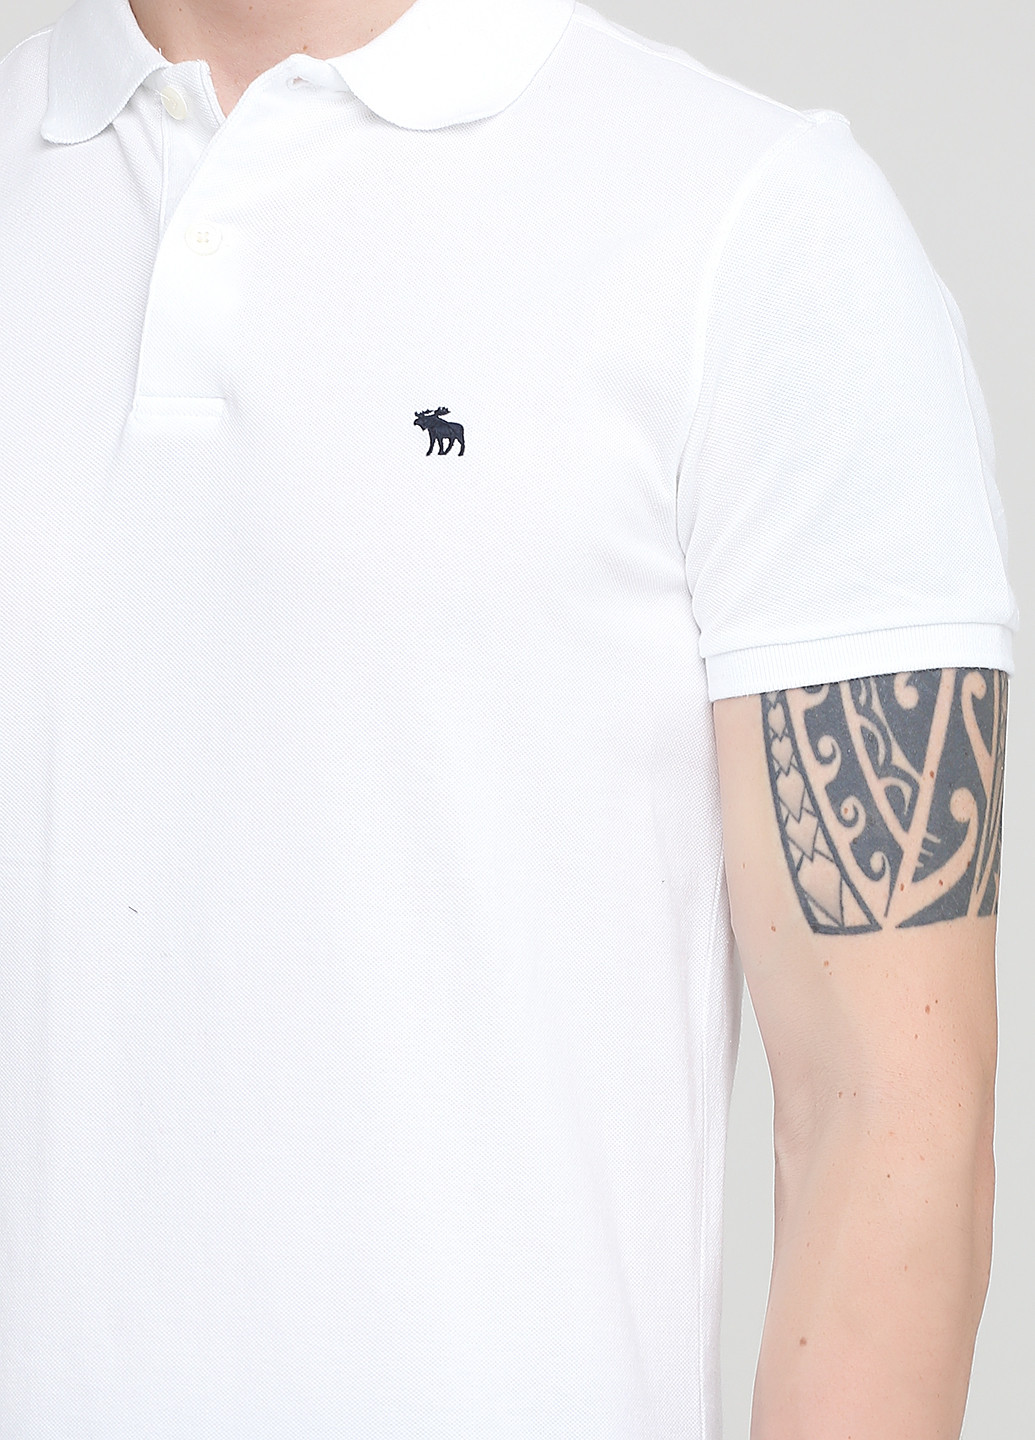 Белая футболка-поло для мужчин Abercrombie & Fitch однотонная